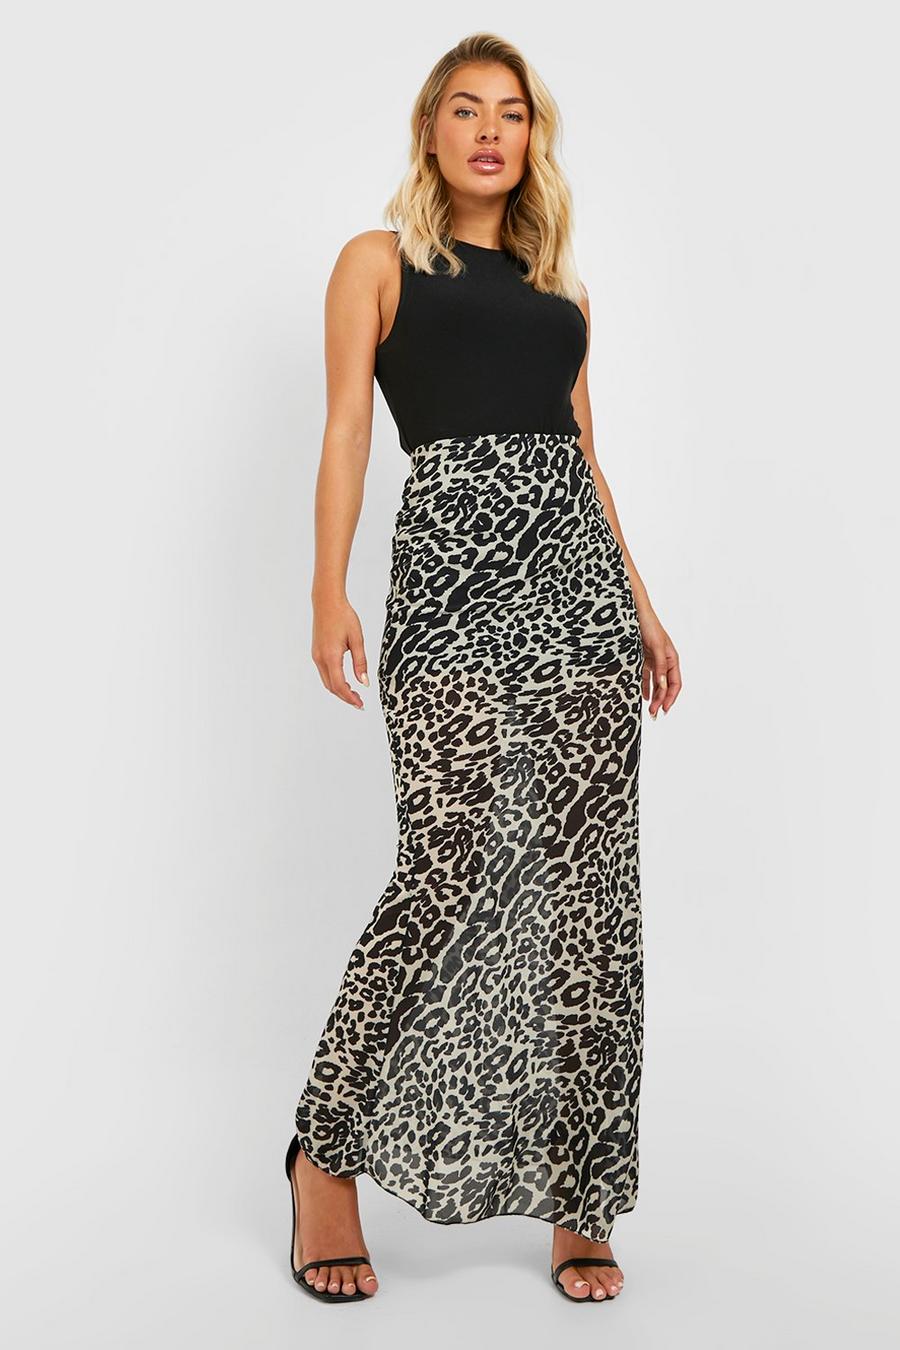 Tan Leopard Chiffon Maxi Skirt